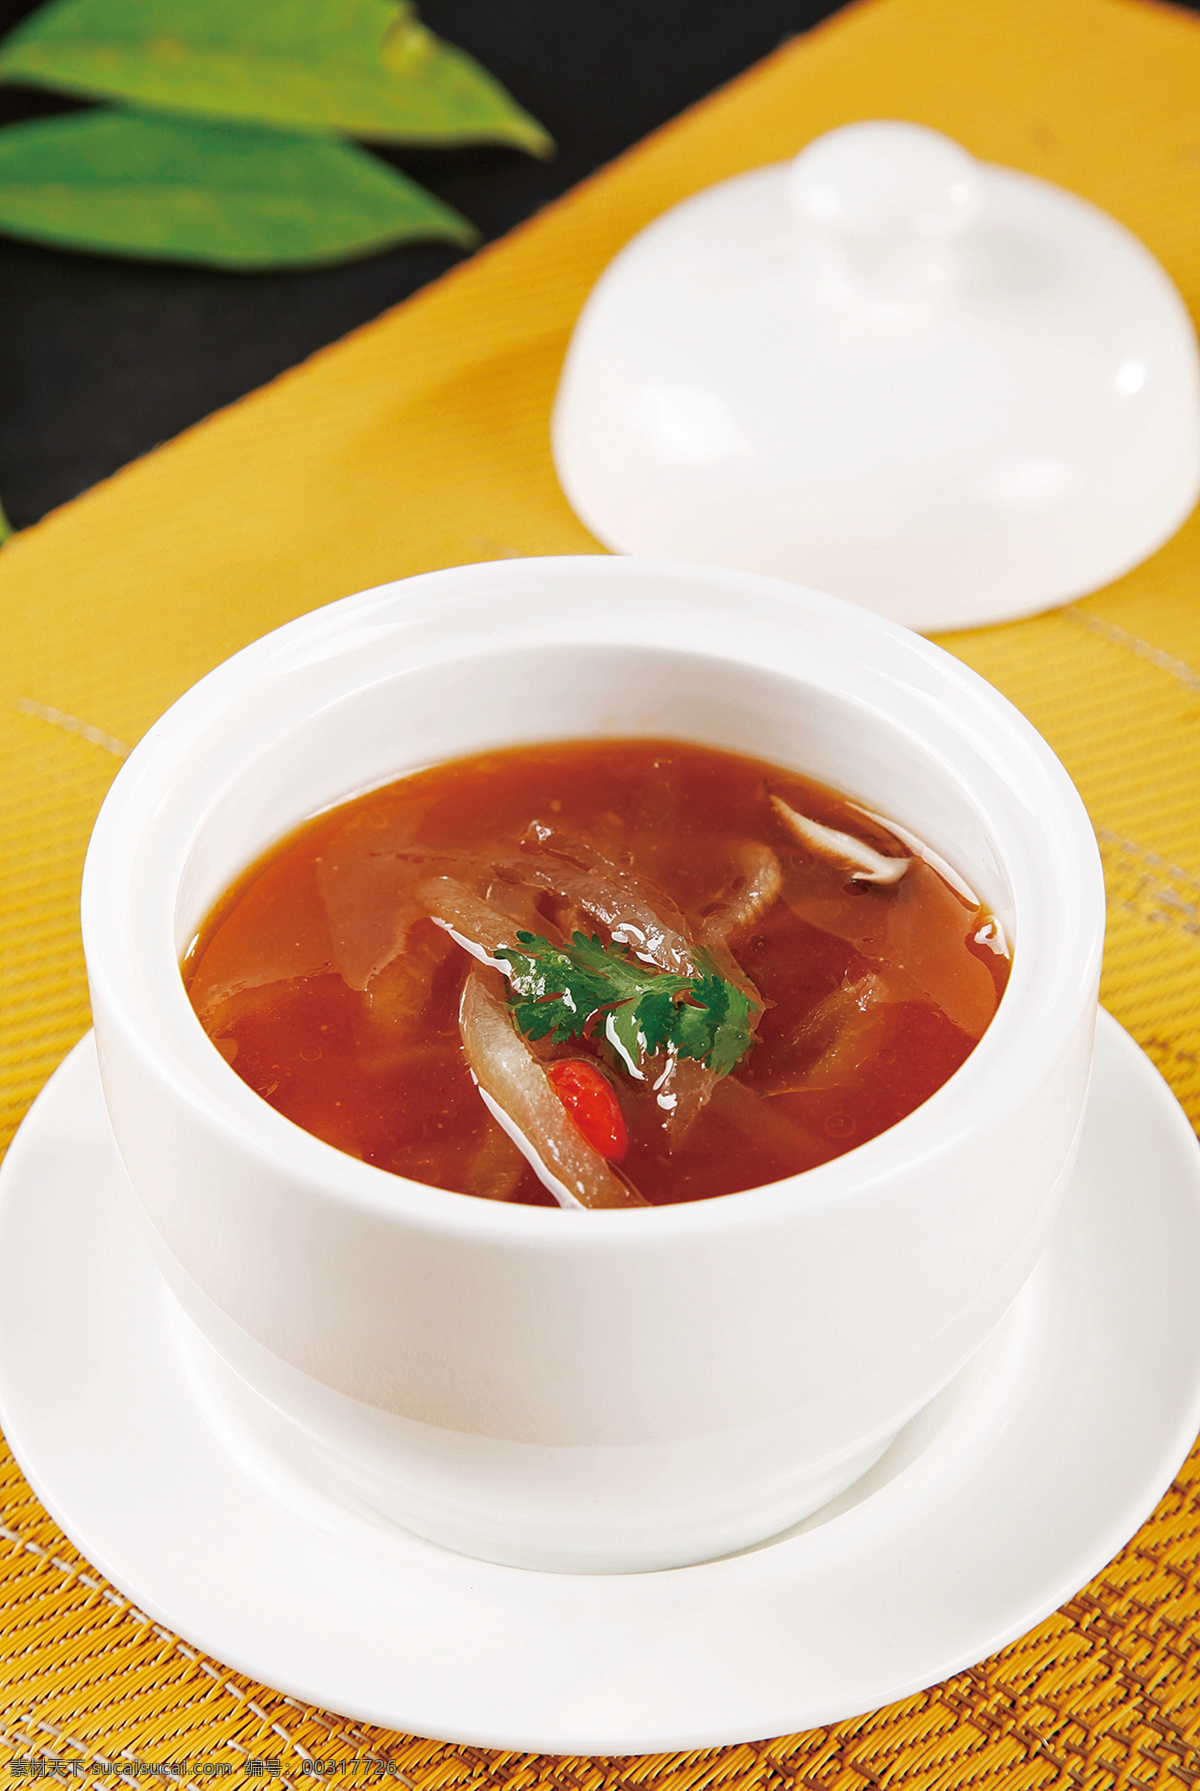 红煨沙鱼皮 美食 传统美食 餐饮美食 高清菜谱用图